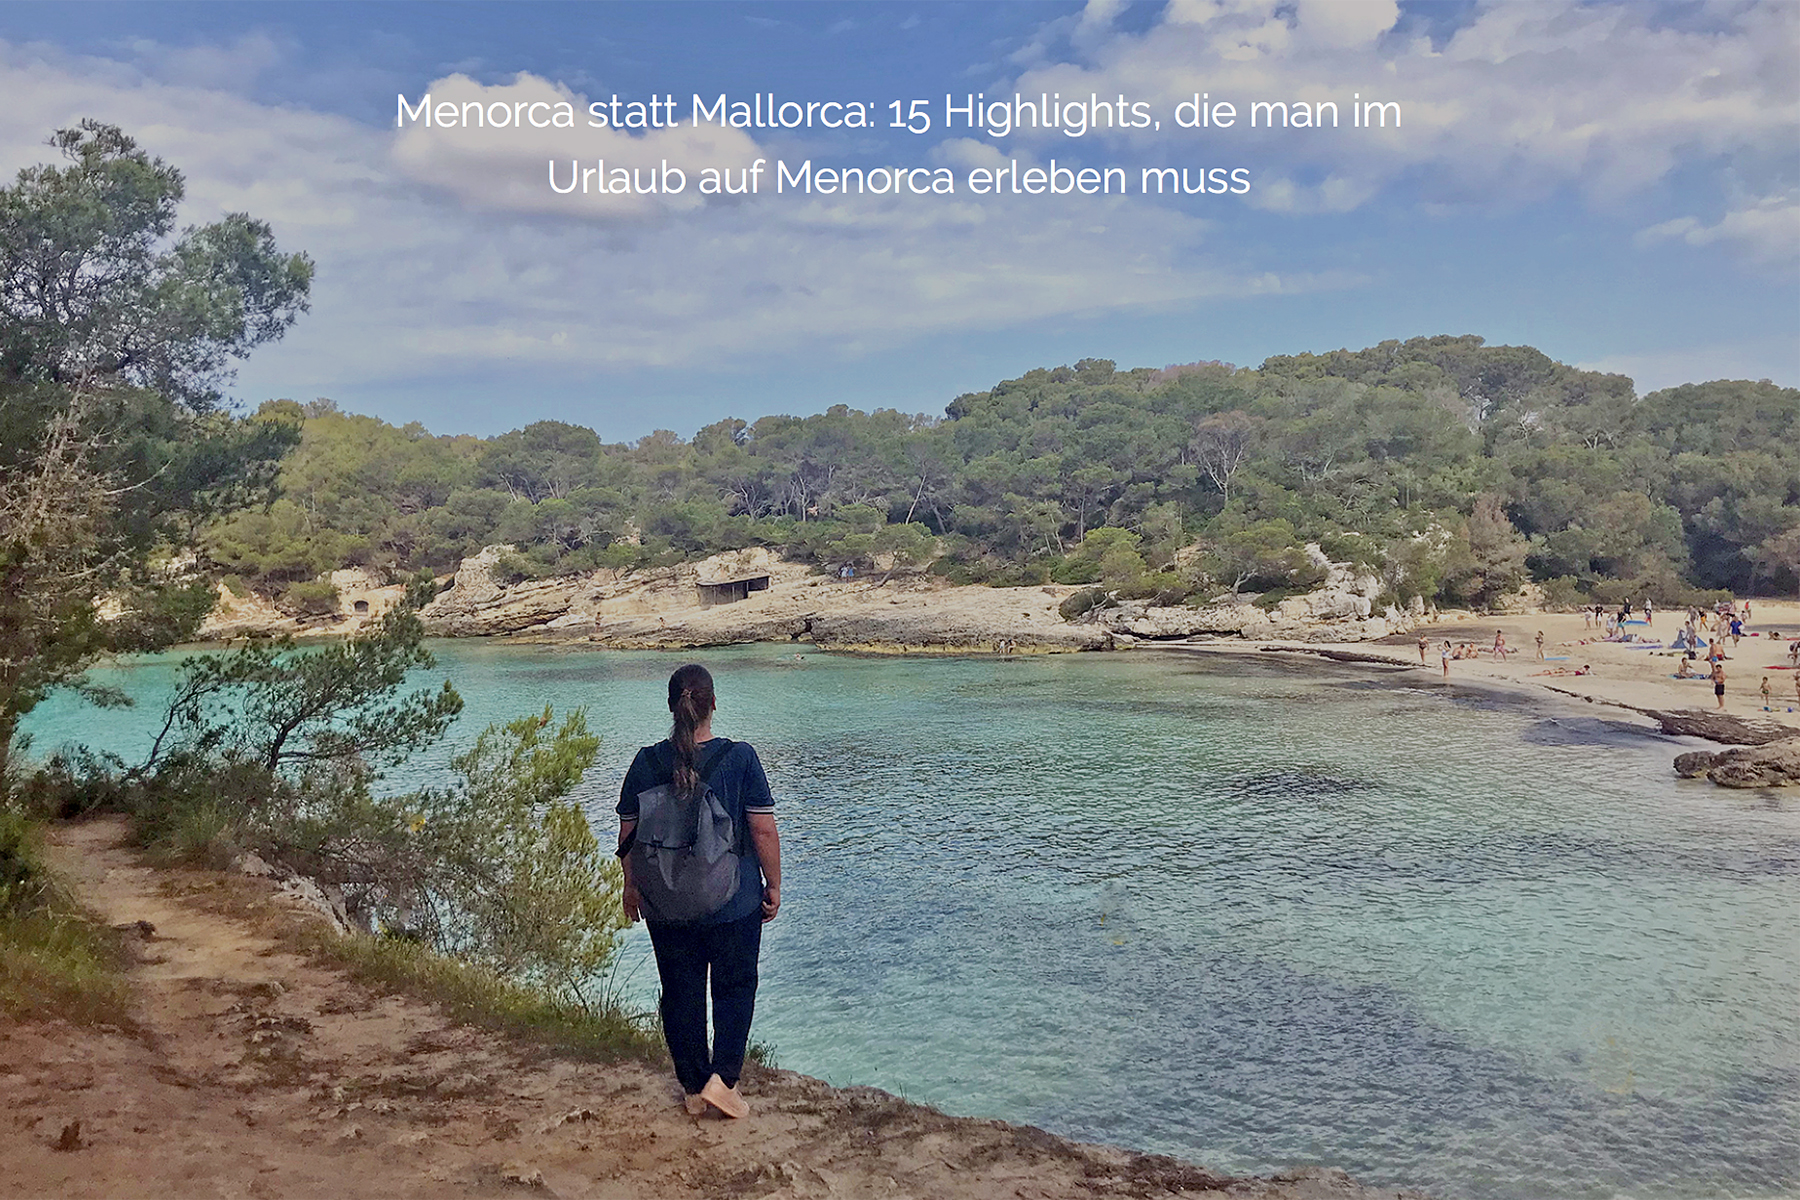 Reise-Special Menorca: Urlaubs-Guide für die nächste Reise nach Menorca